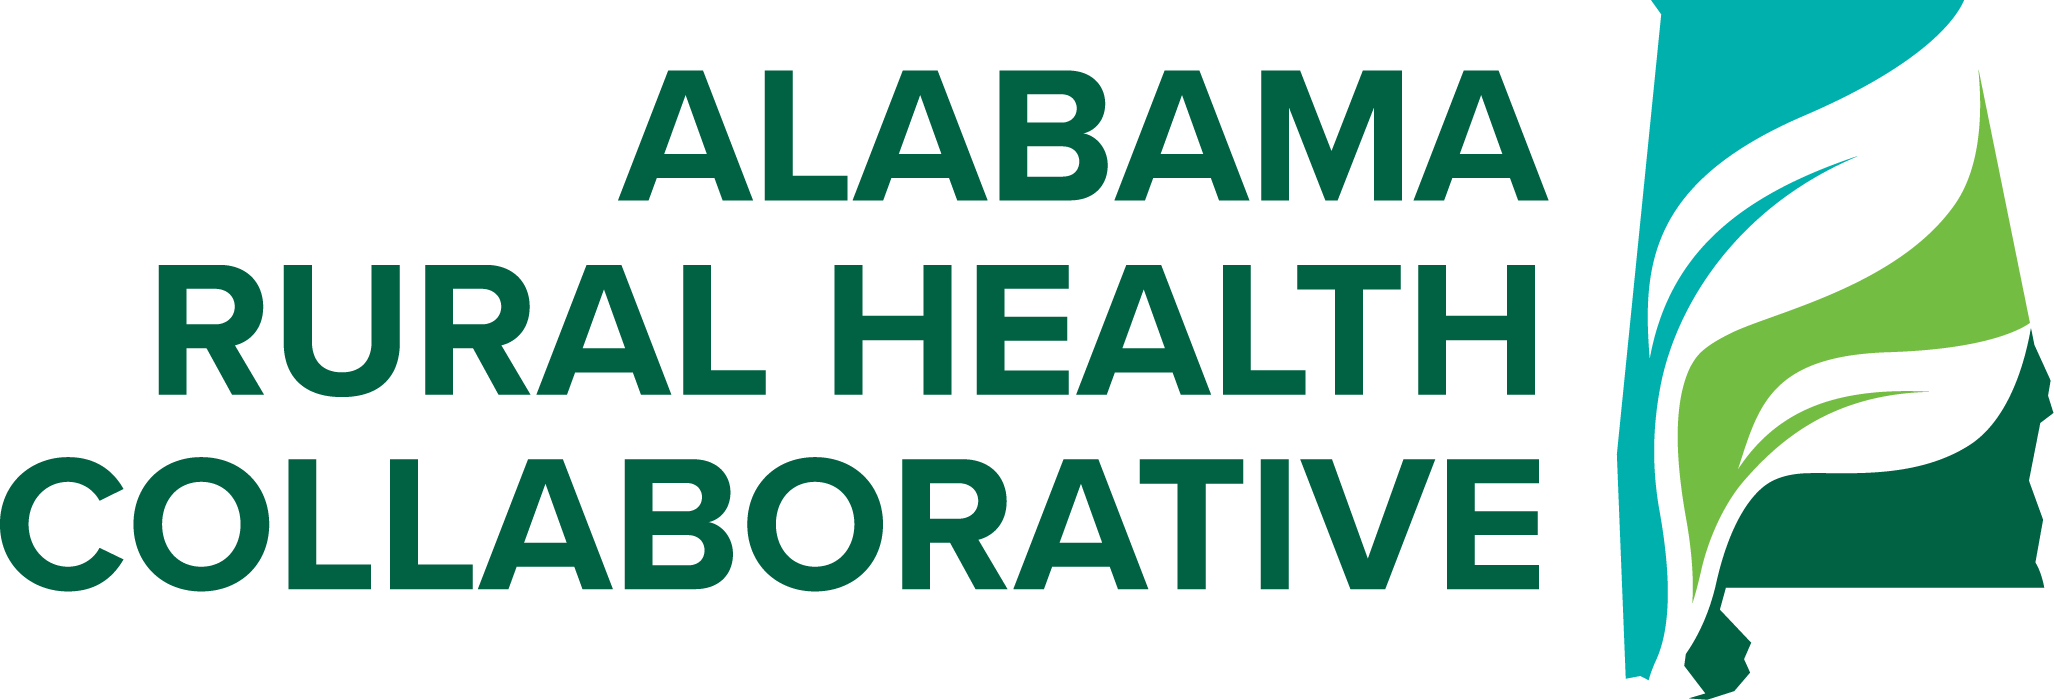 Alabama Rural Health Collaborative